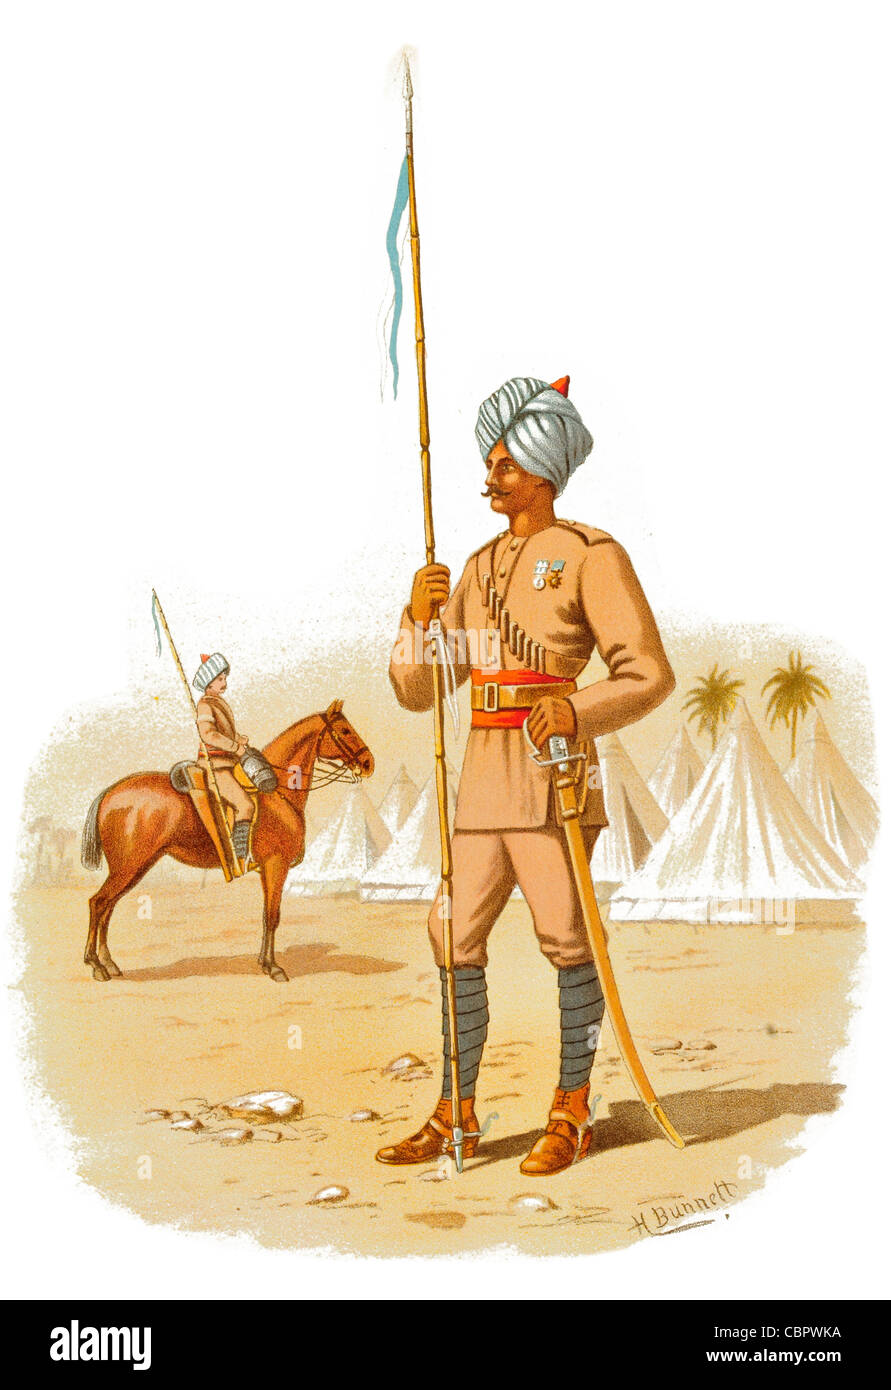 Der 13. Bengal Lancers Zelt camp Speer lance britische indische Armee Raj Indien Bengal Madras Bombay Kriegsführung gegen Streitkräfte Stockfoto